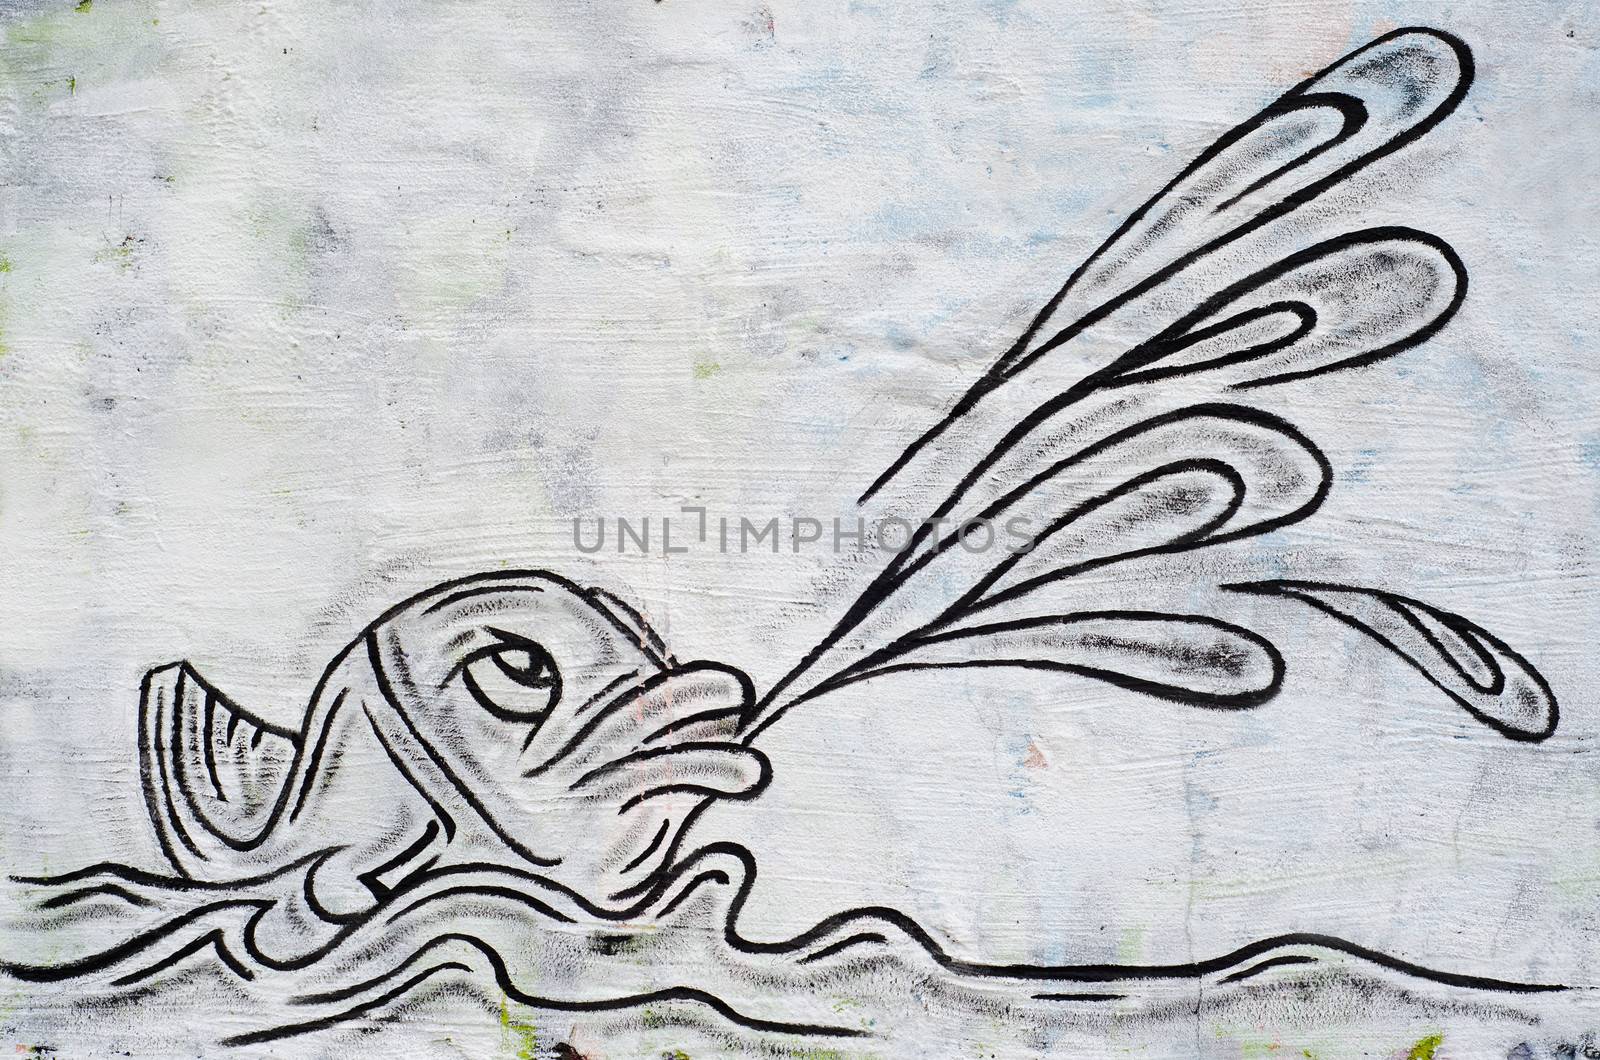 fish as graffiti on a wall